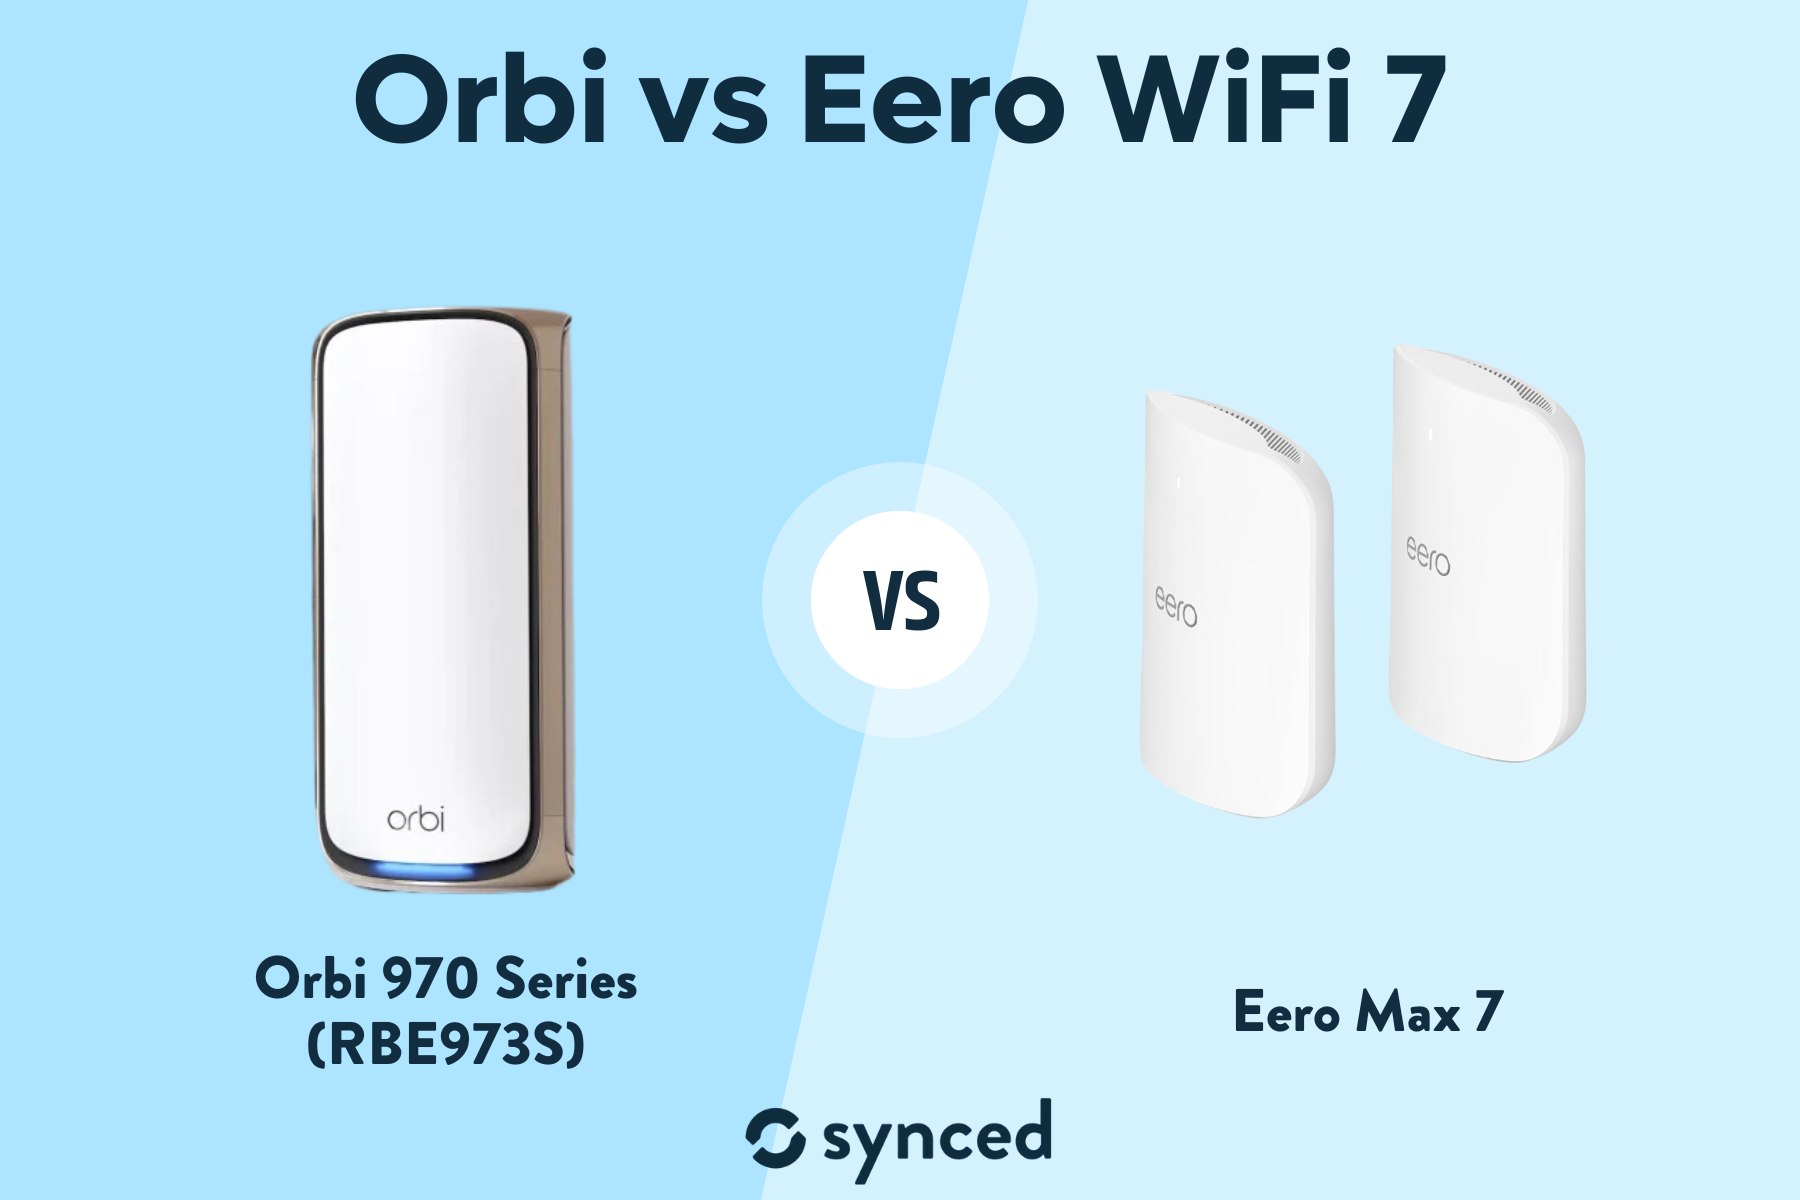 Orbi vs Eero WiFi 7